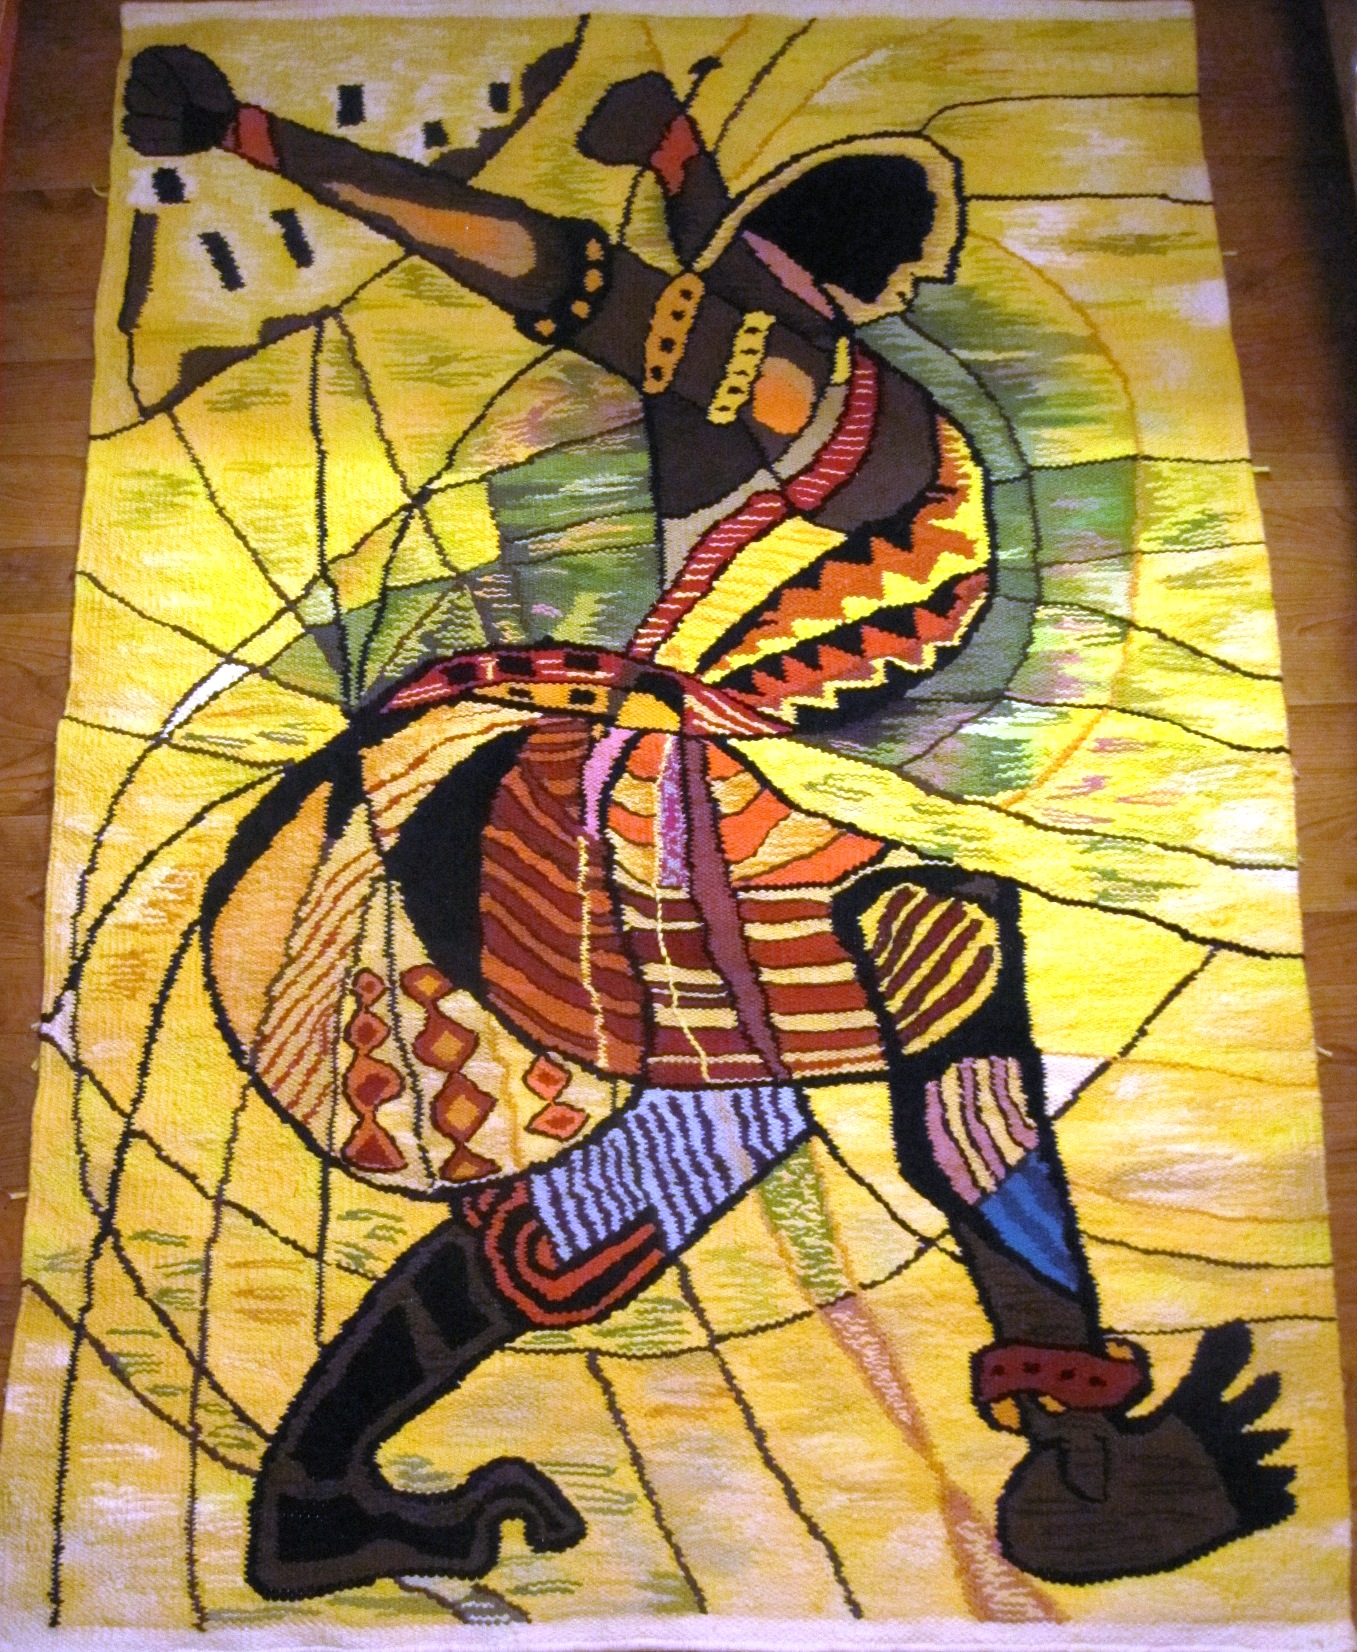 Zulu Dancer